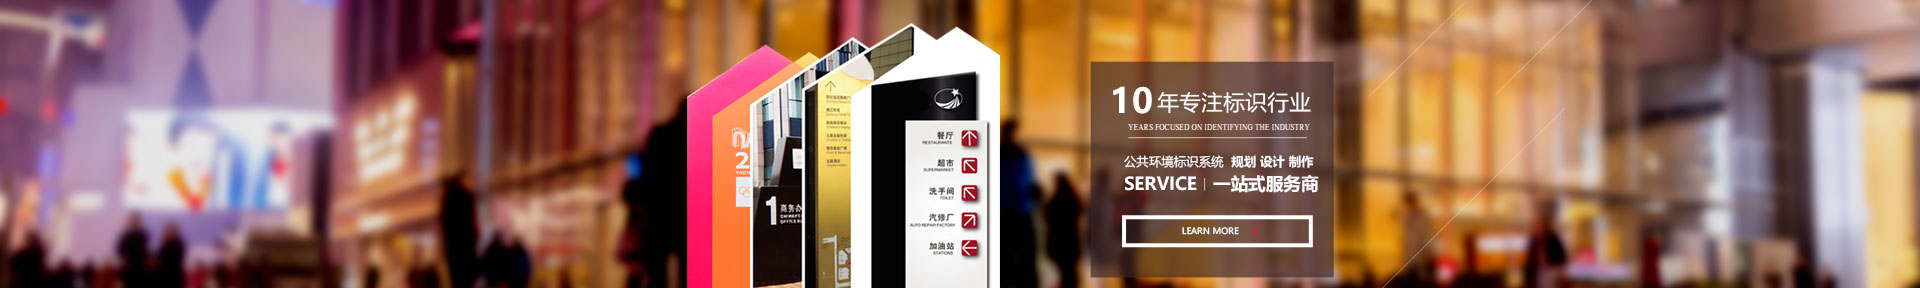 重庆365bet娱乐场官网备用_365bet软件下_365bet赌场手机投注标牌制作